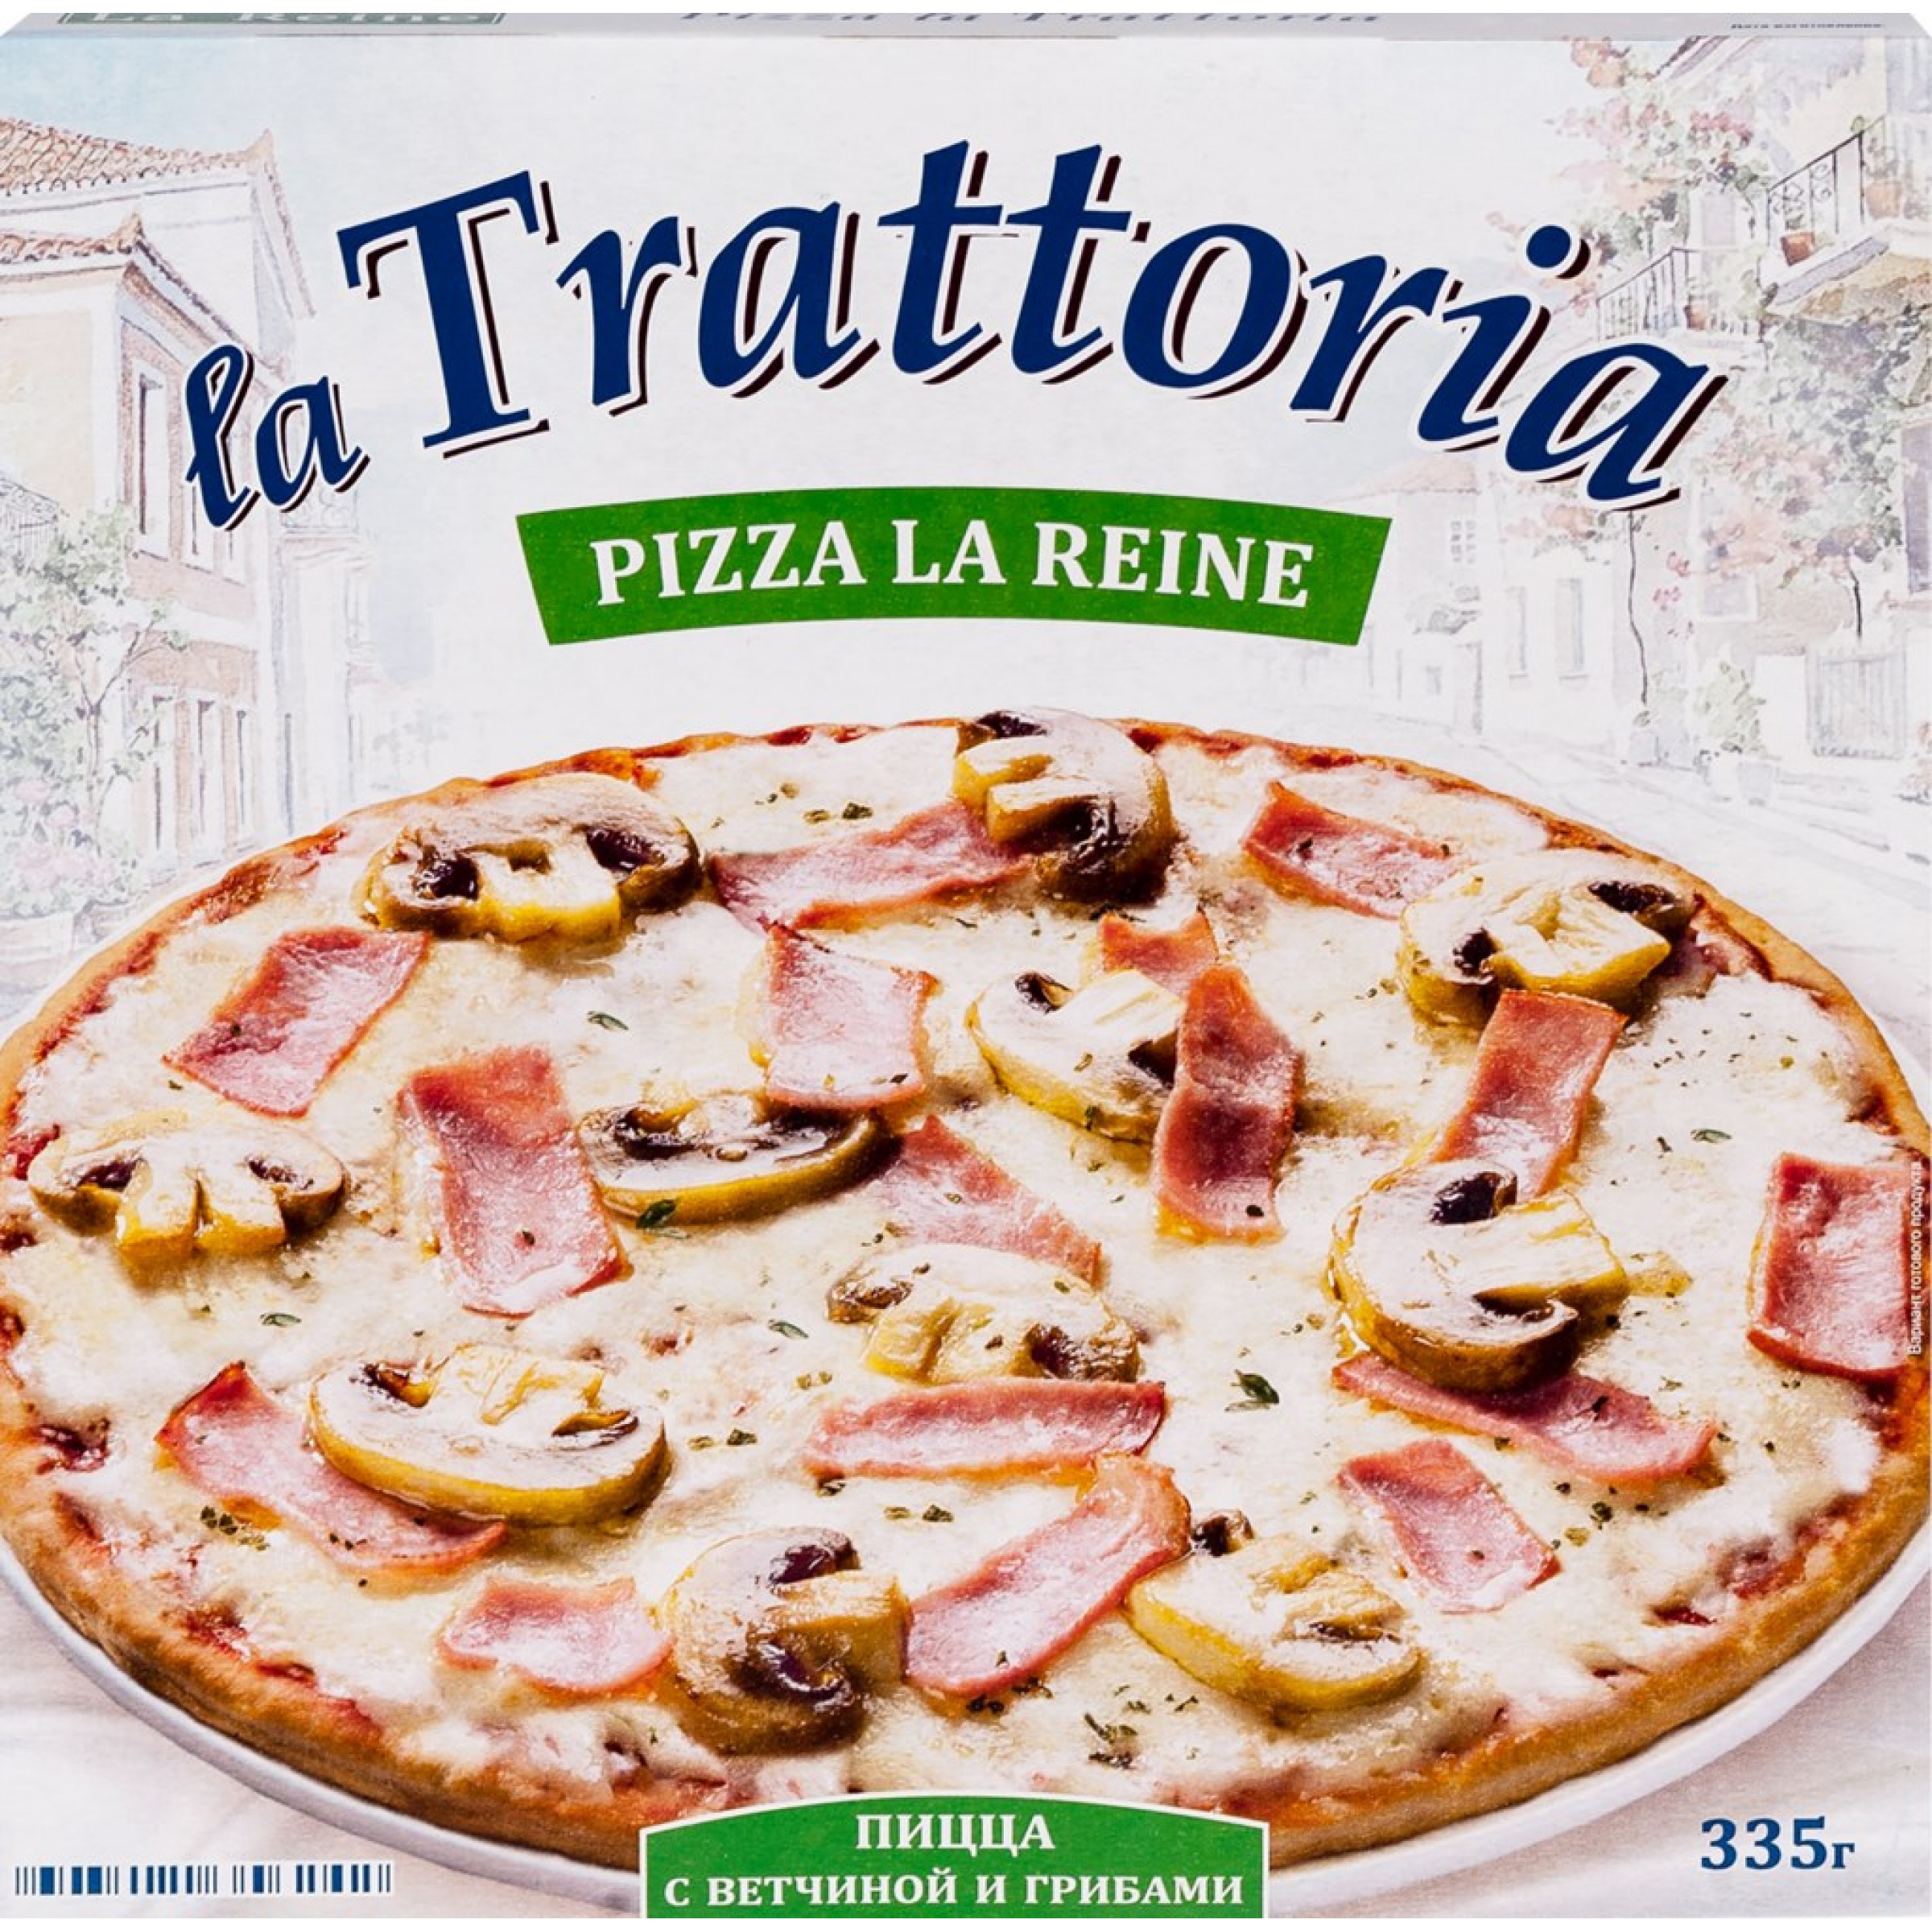 Пицца с Ветчиной и грибами La Trattoria, 335 г